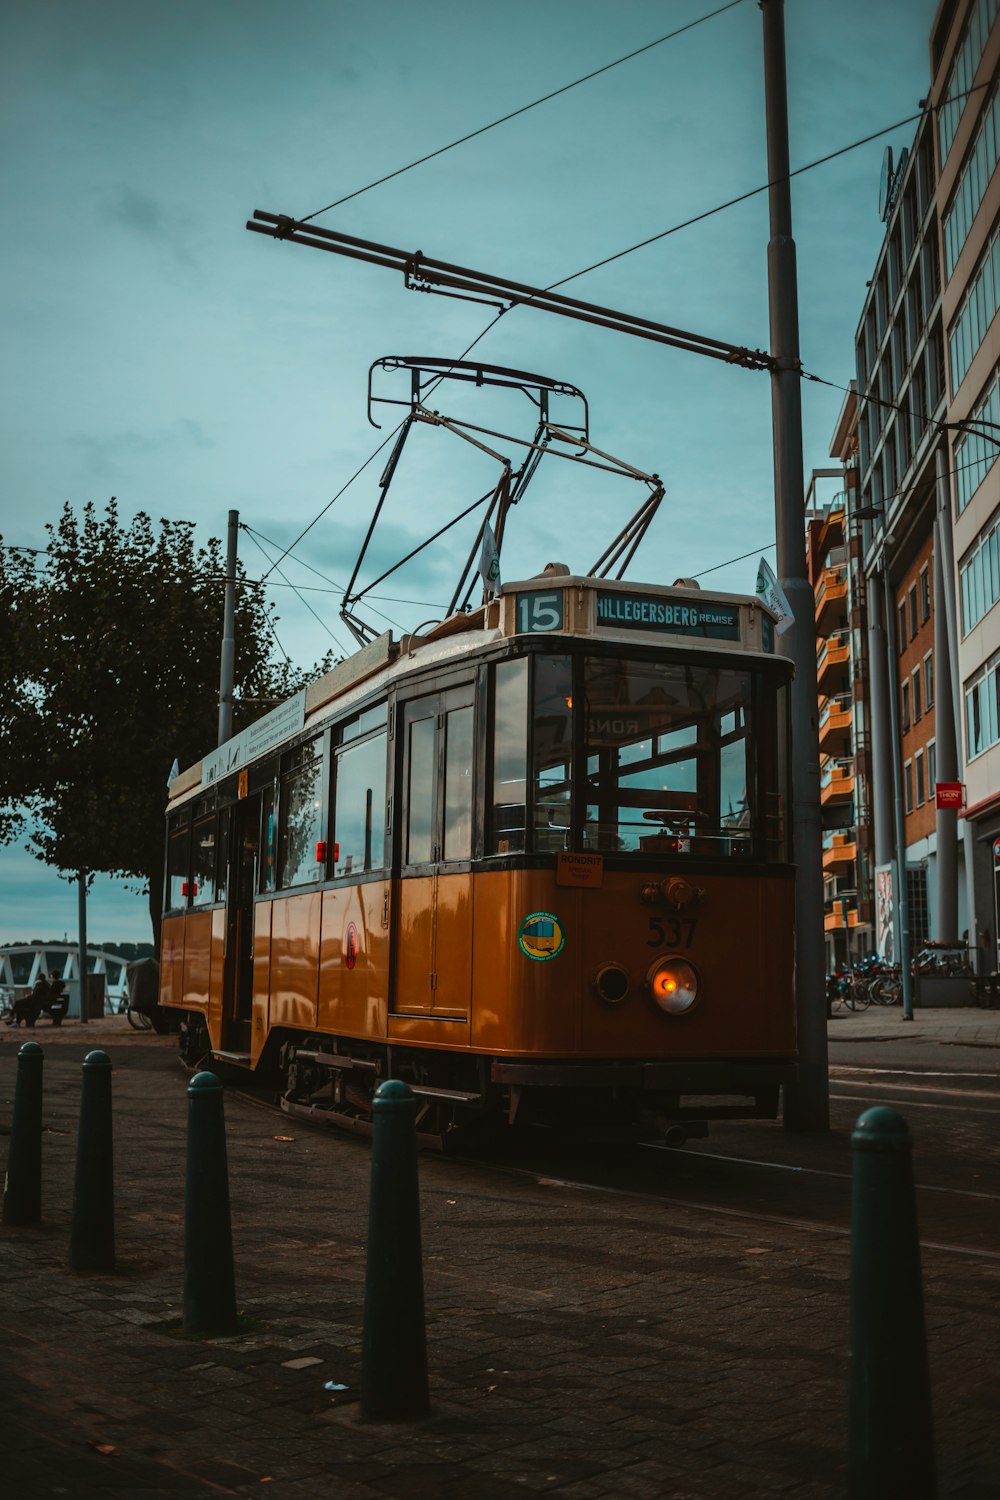 an orange trolley car on a city street